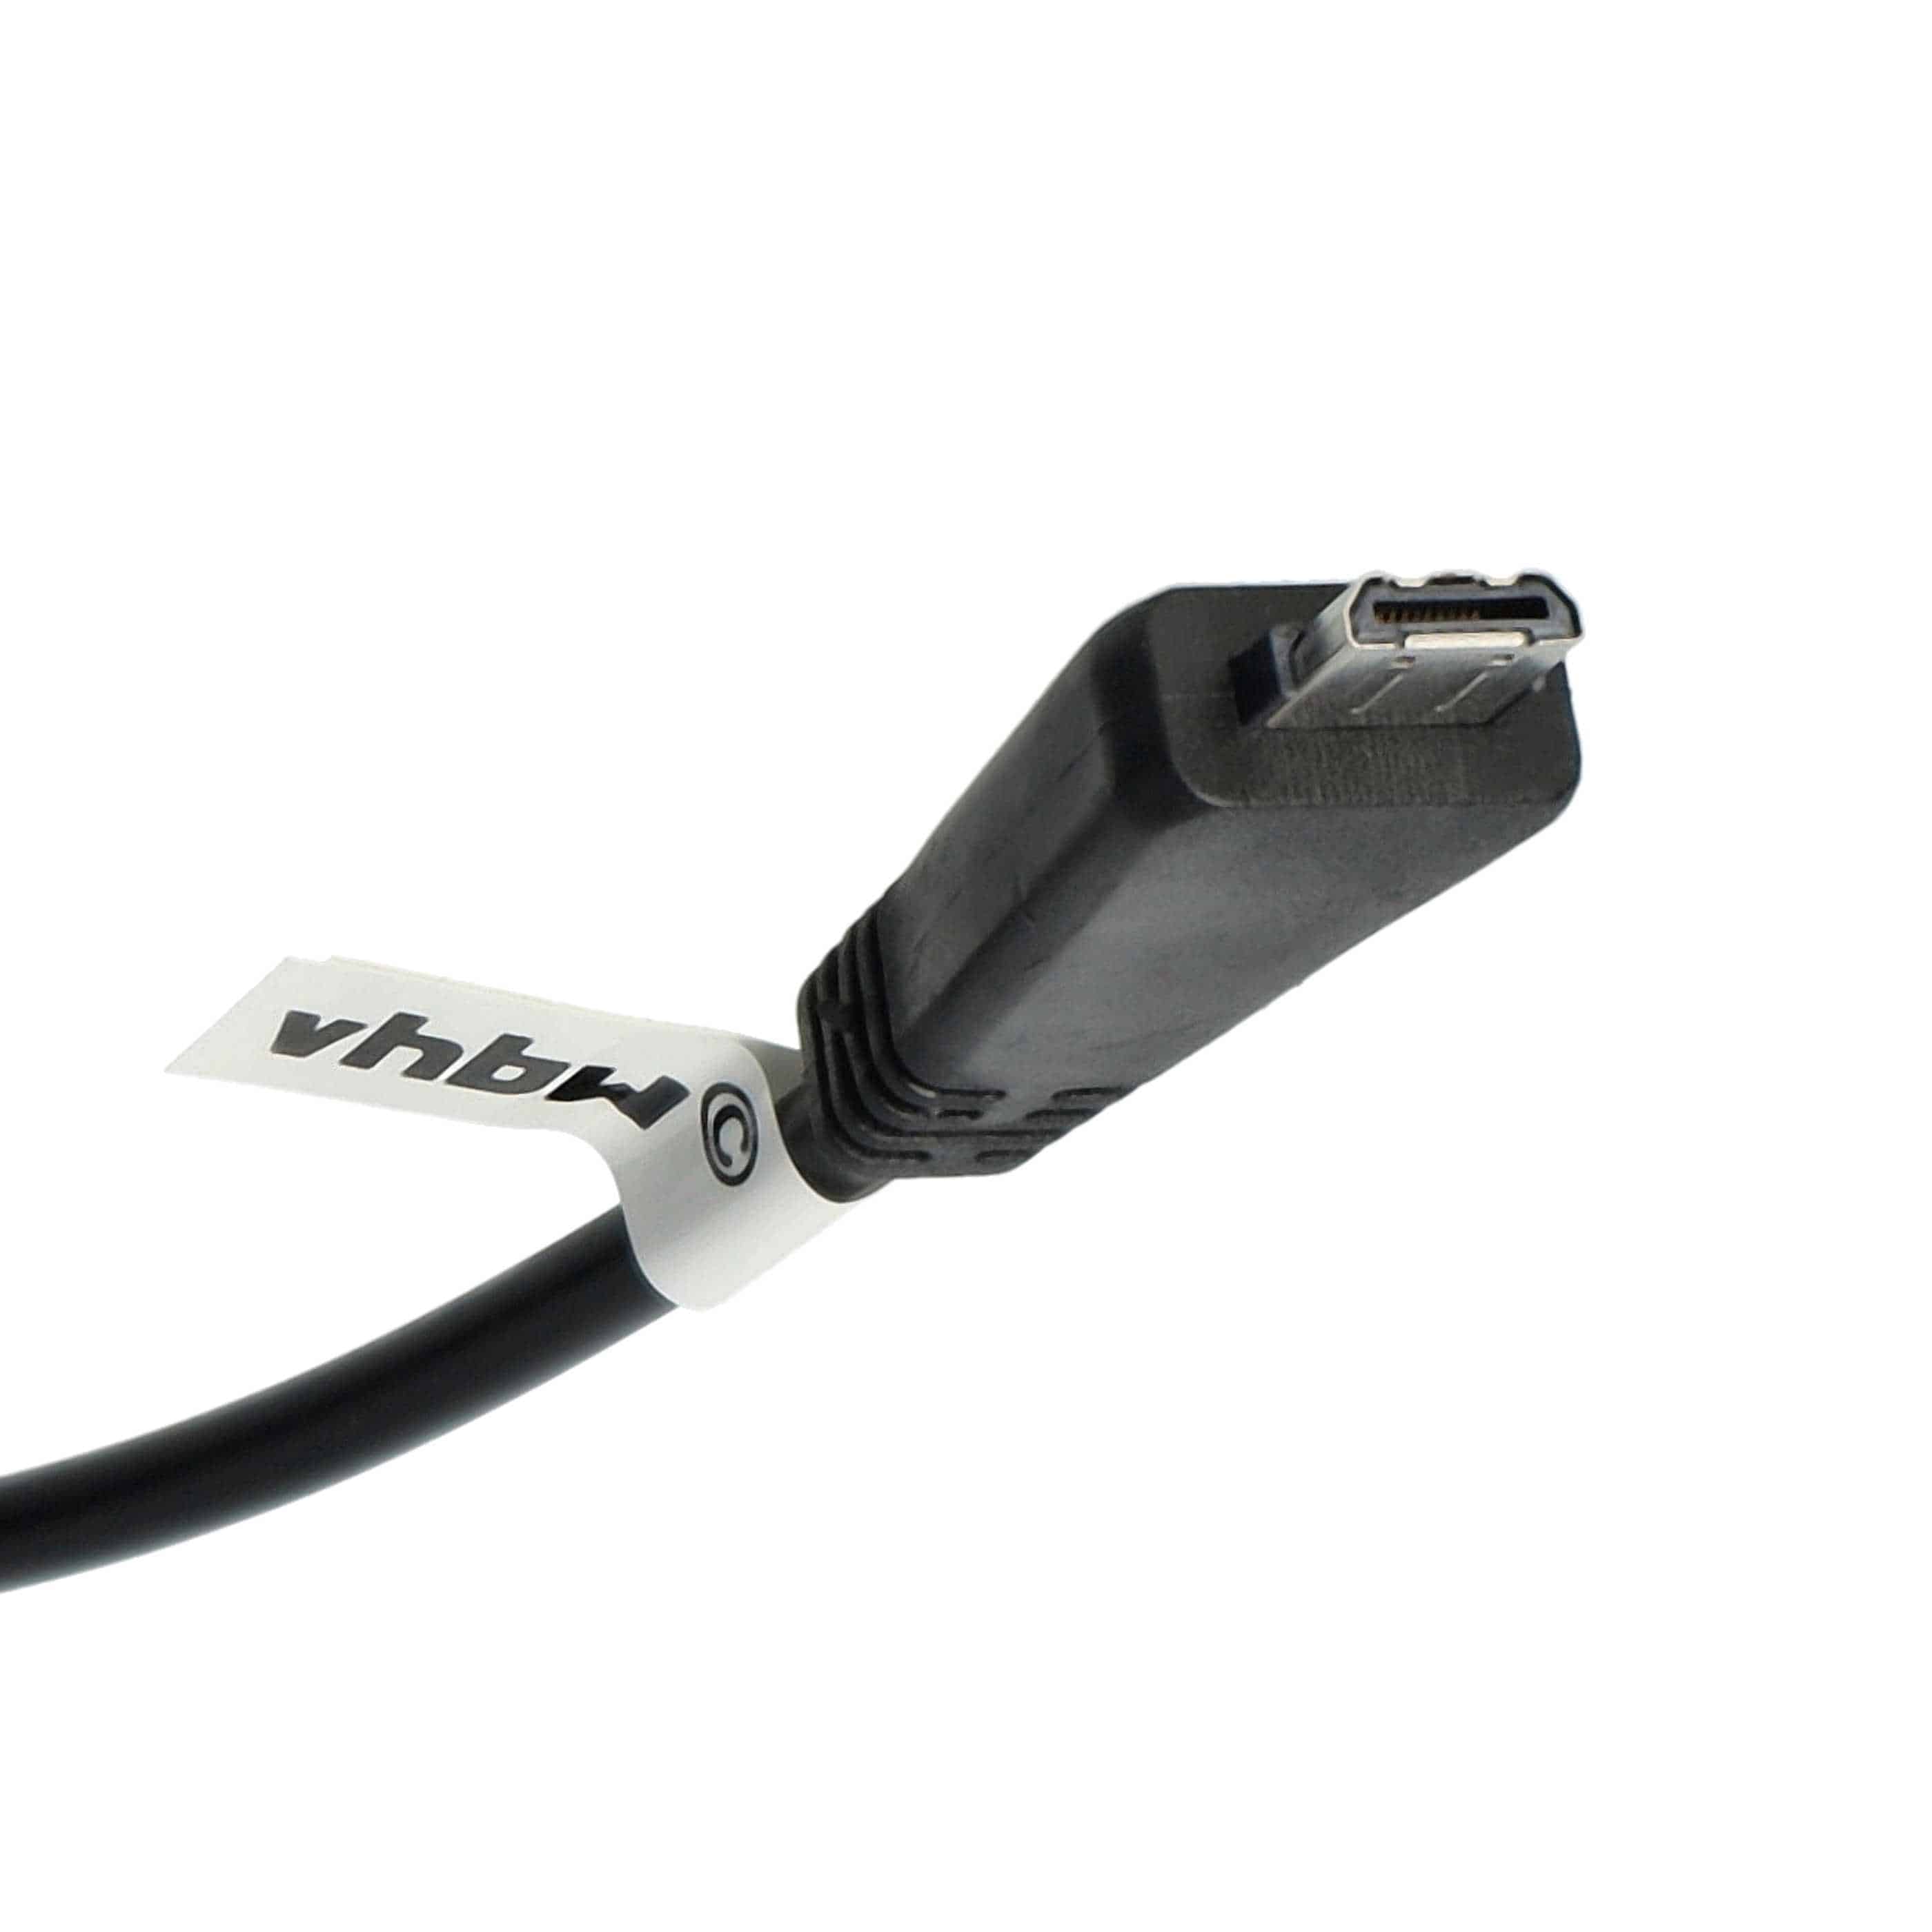 USB Datenkabel als Ersatz für Sony VMC-MD3 (ohne AV-Funktion) für Kamera - 150 cm